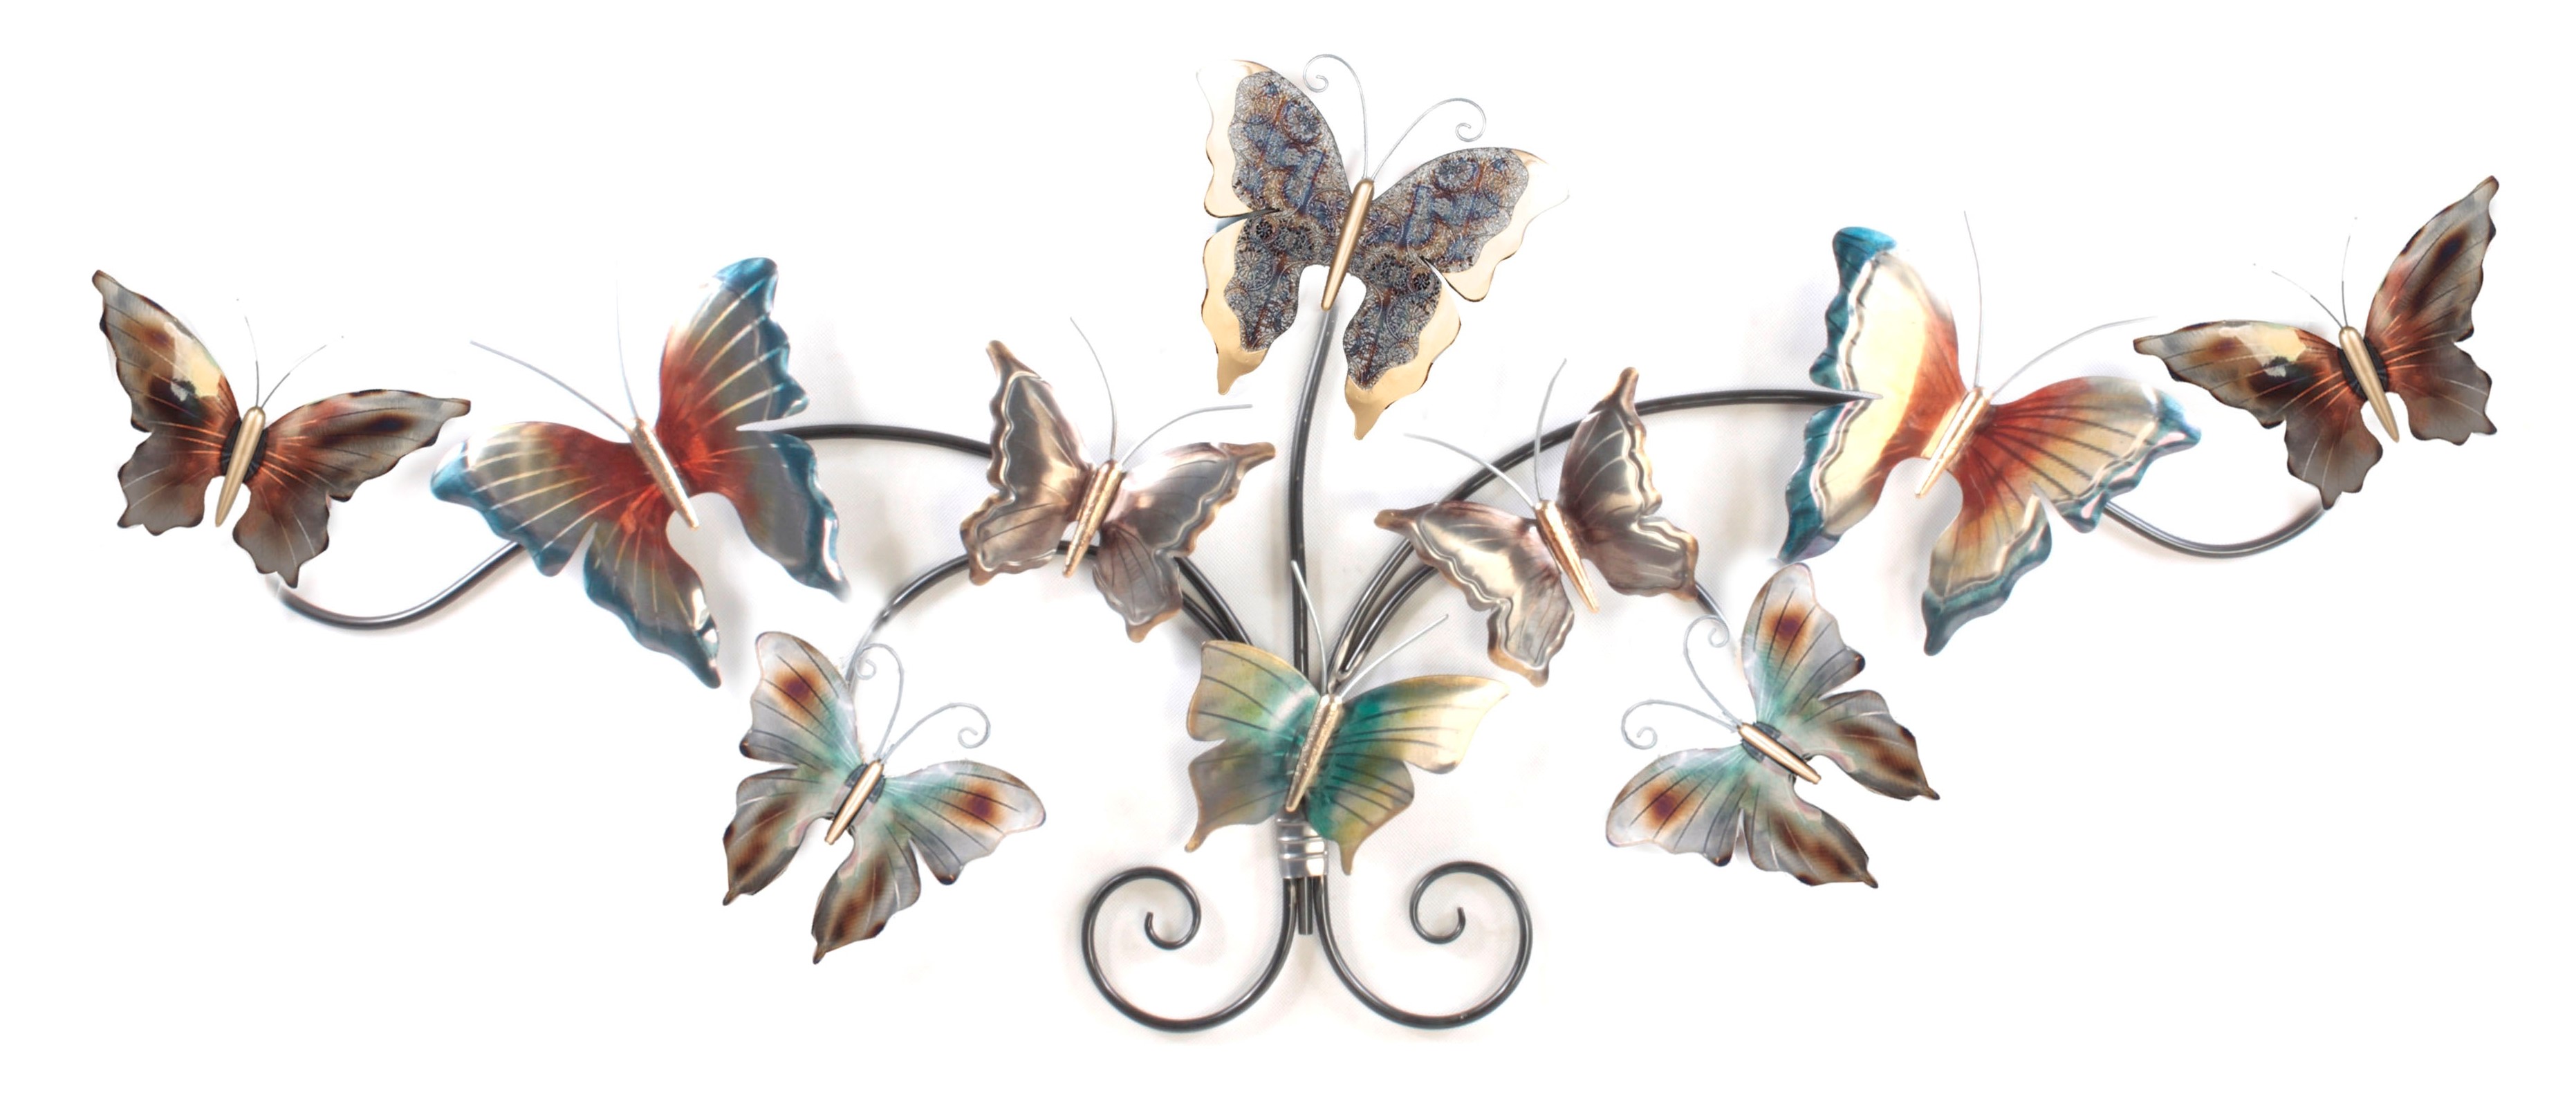 Celsius Opiaat gebrek metalen wanddecoratie vlinders op een rij kunstwerk - Betaalbarekunst.nl